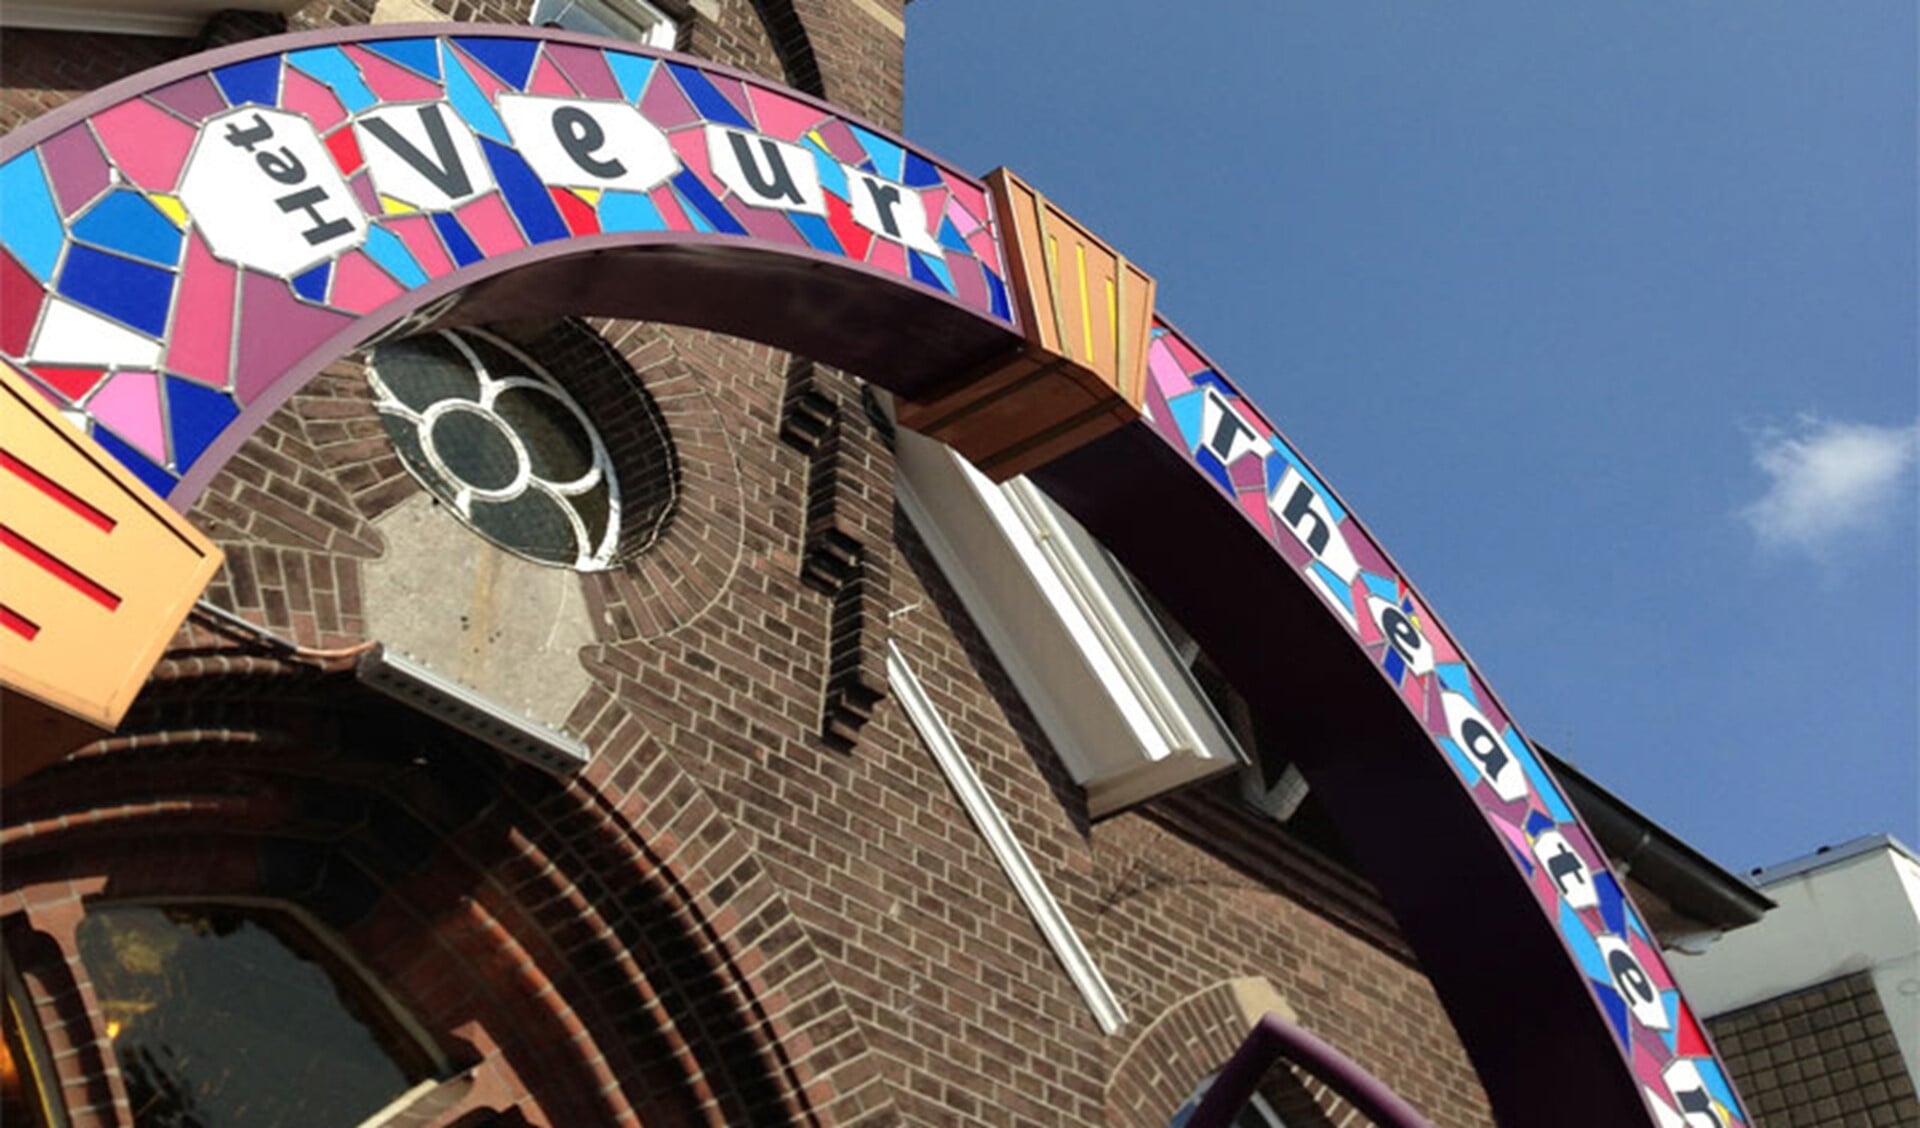 Het Veur Theater in het oude kerkje aan de Damlaan in Leidschendam krijgt dit jaar geen subsidie (archieffoto).